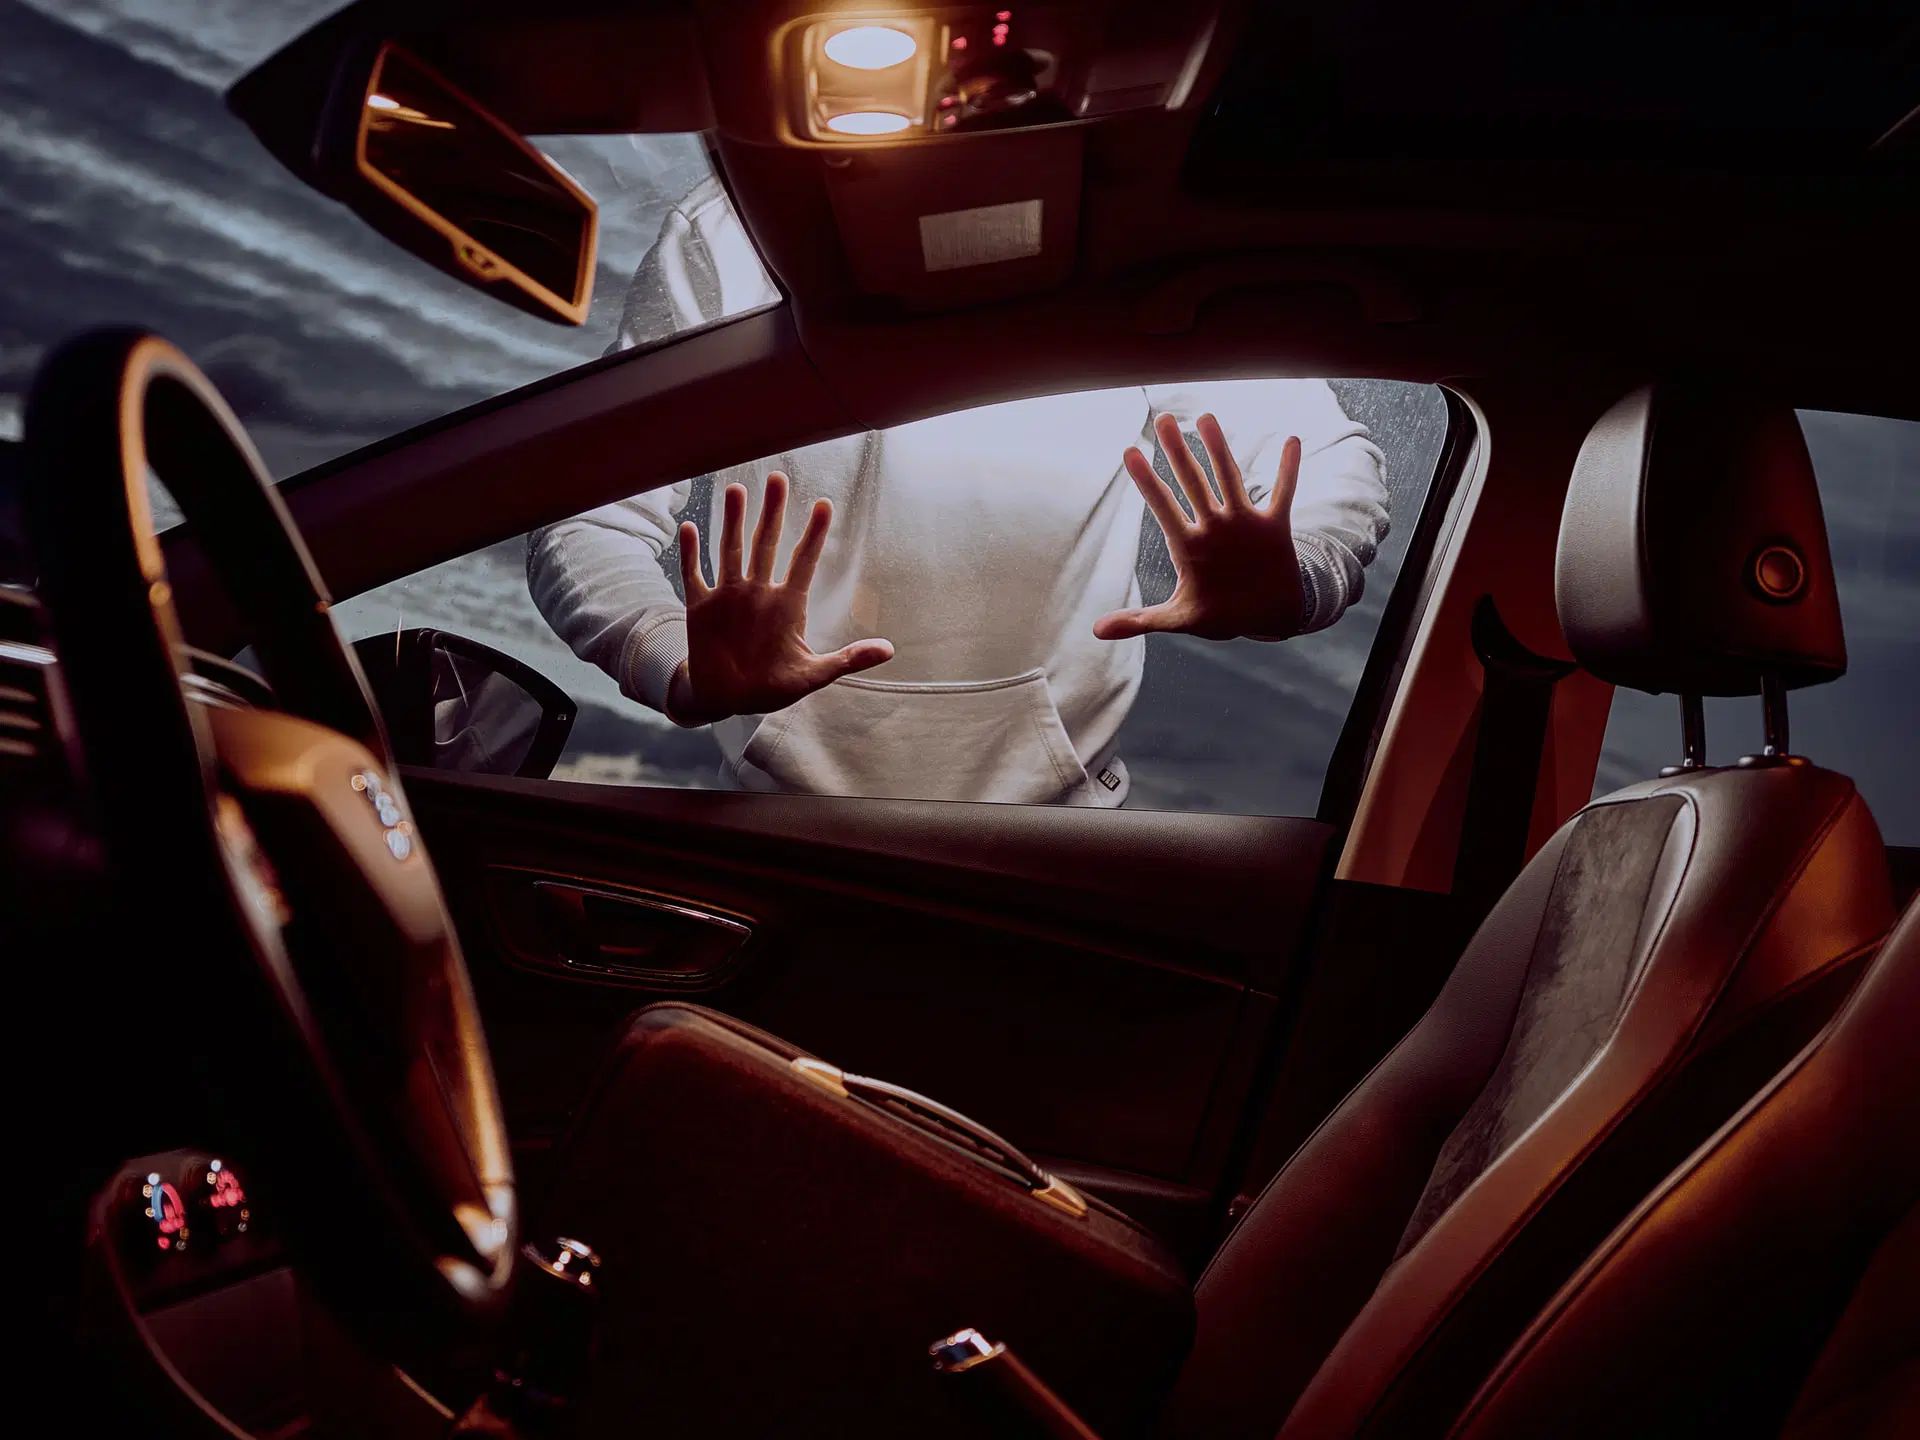 interiorul unei masini si o persoana in exterior cu mainile pe geam